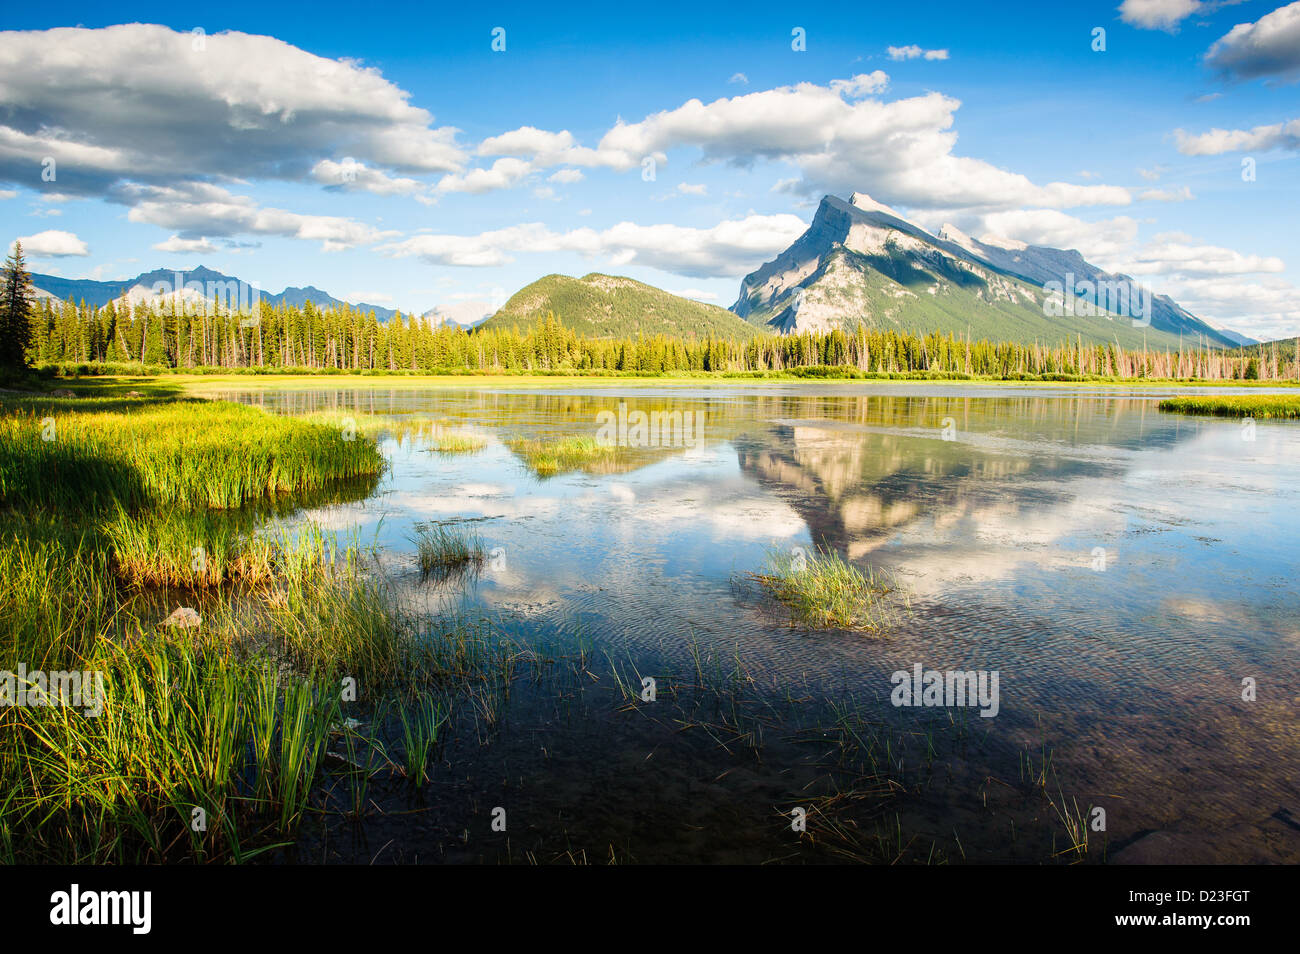 Panorama du mont Rundle mountain peak avec ciel bleu se reflétant dans les lacs Vermilion au Parc national Banff, Alberta Canada Banque D'Images